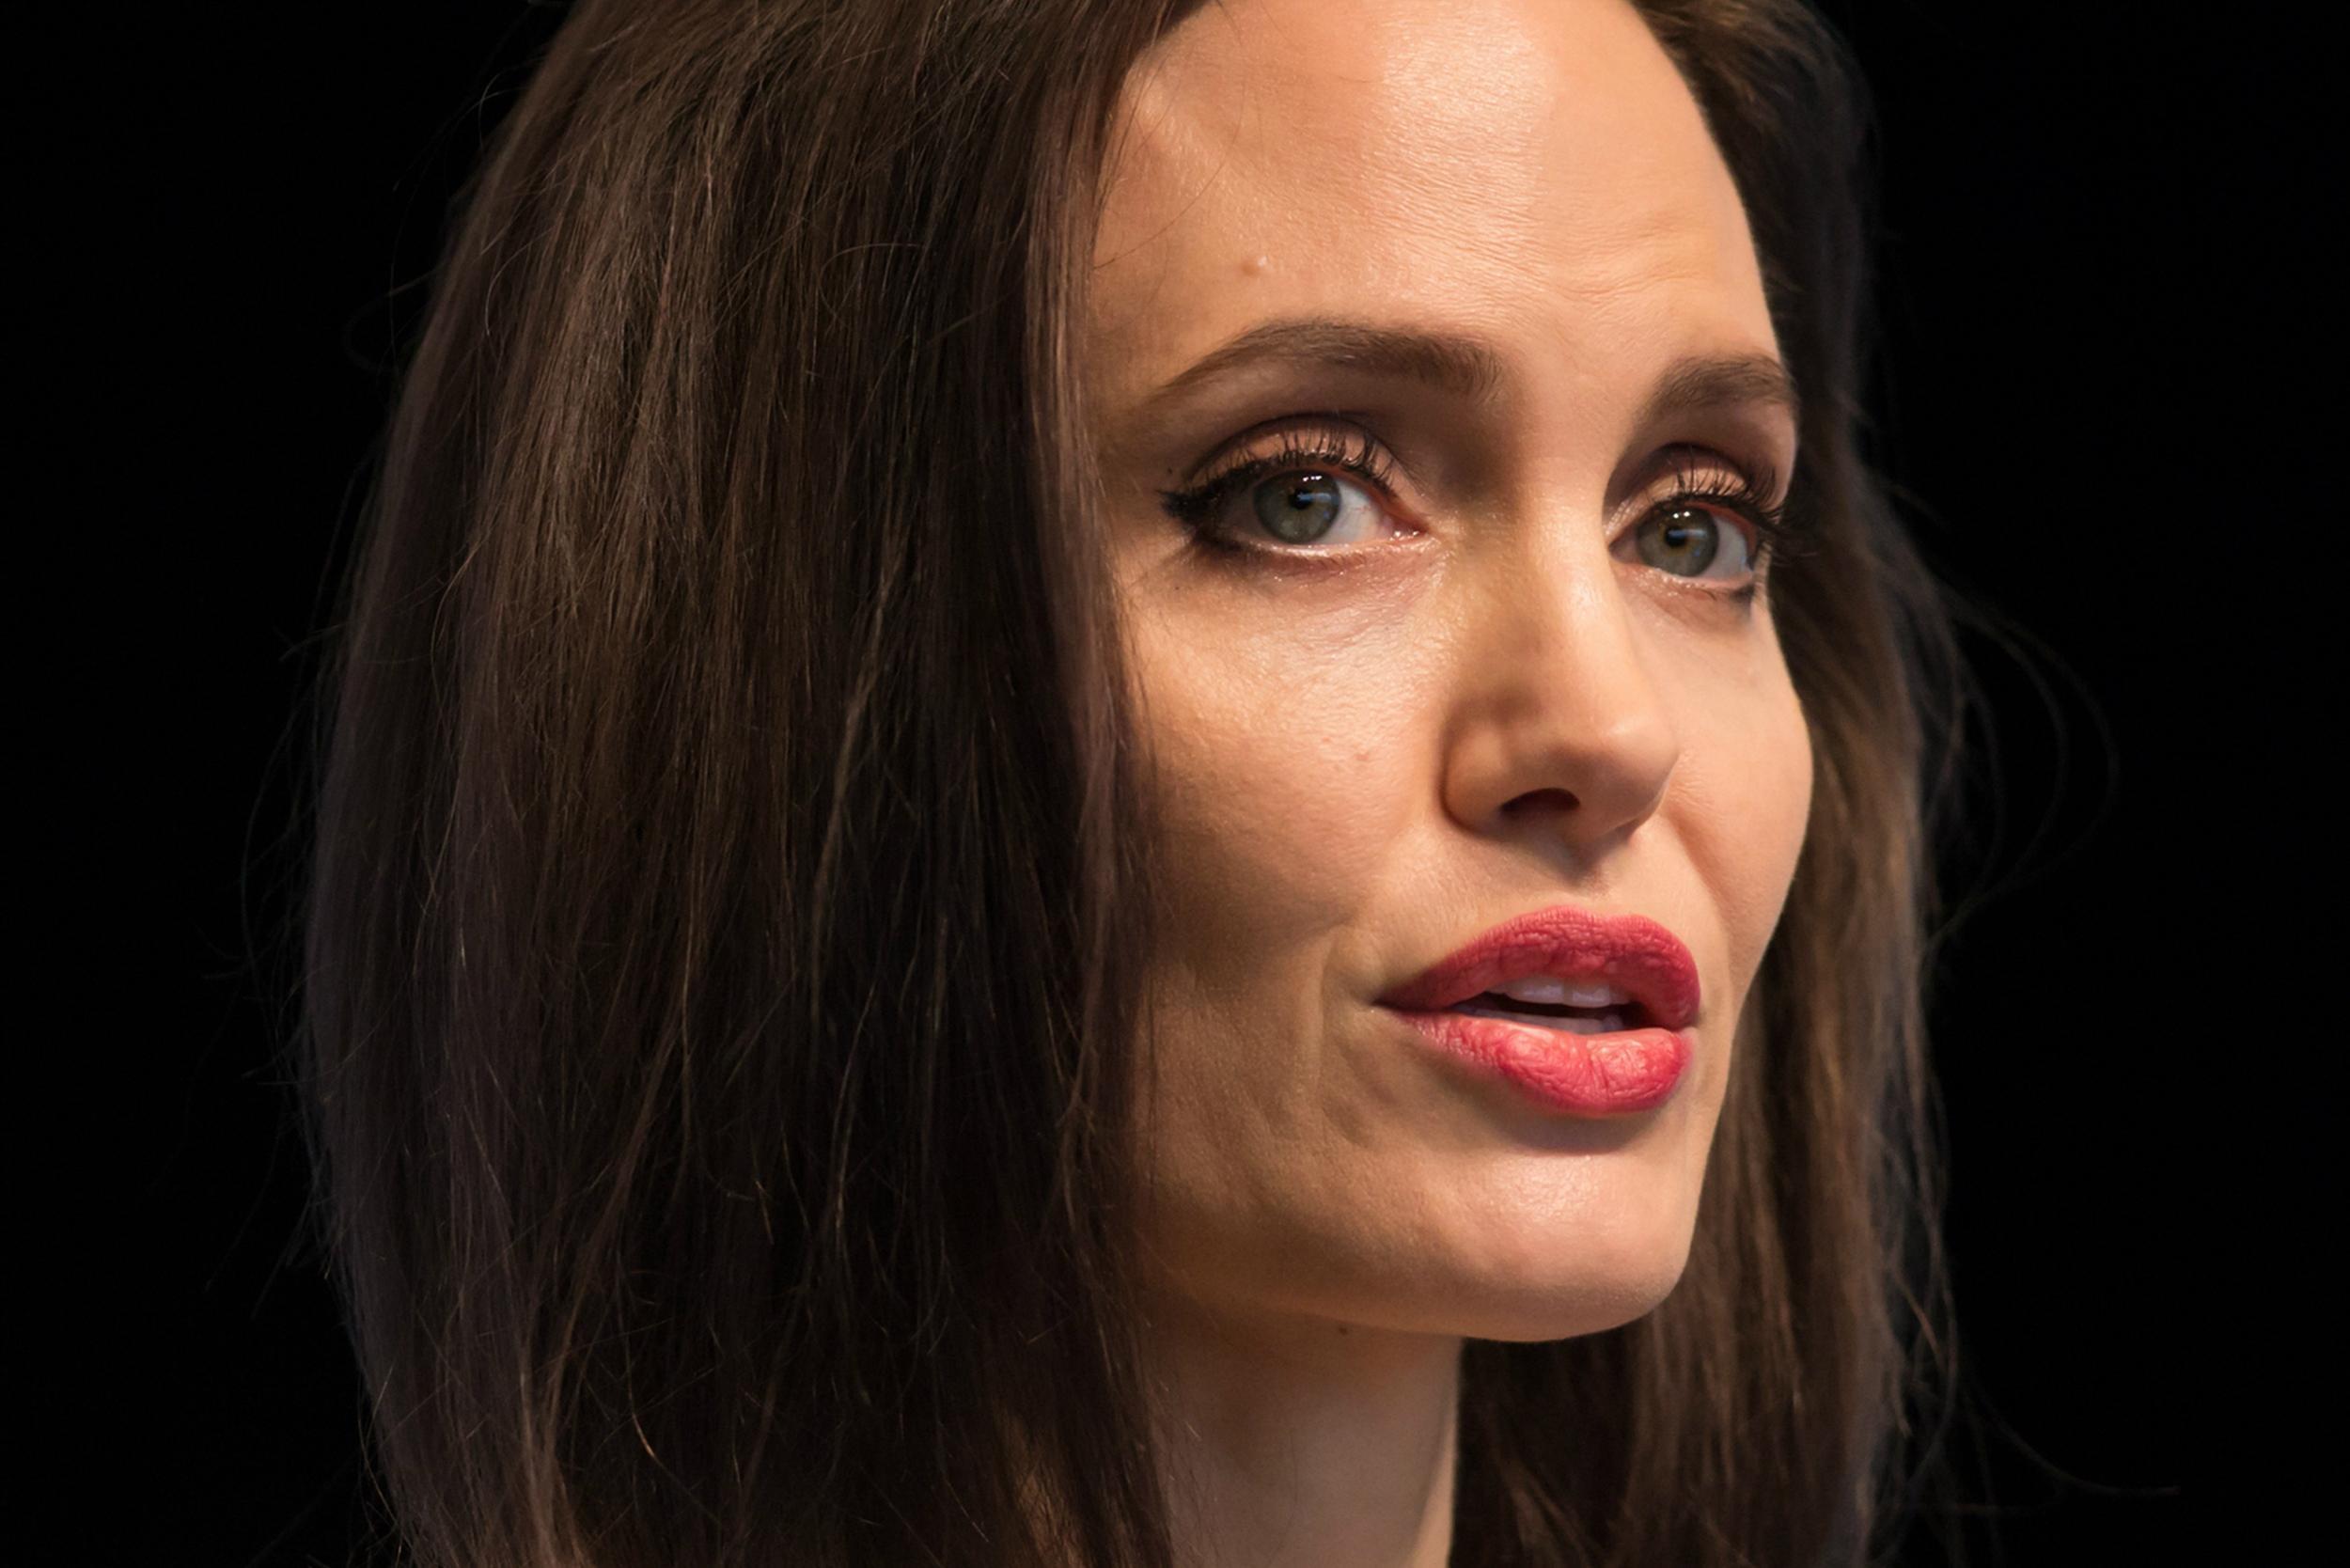 Анджелина Джоли, президент